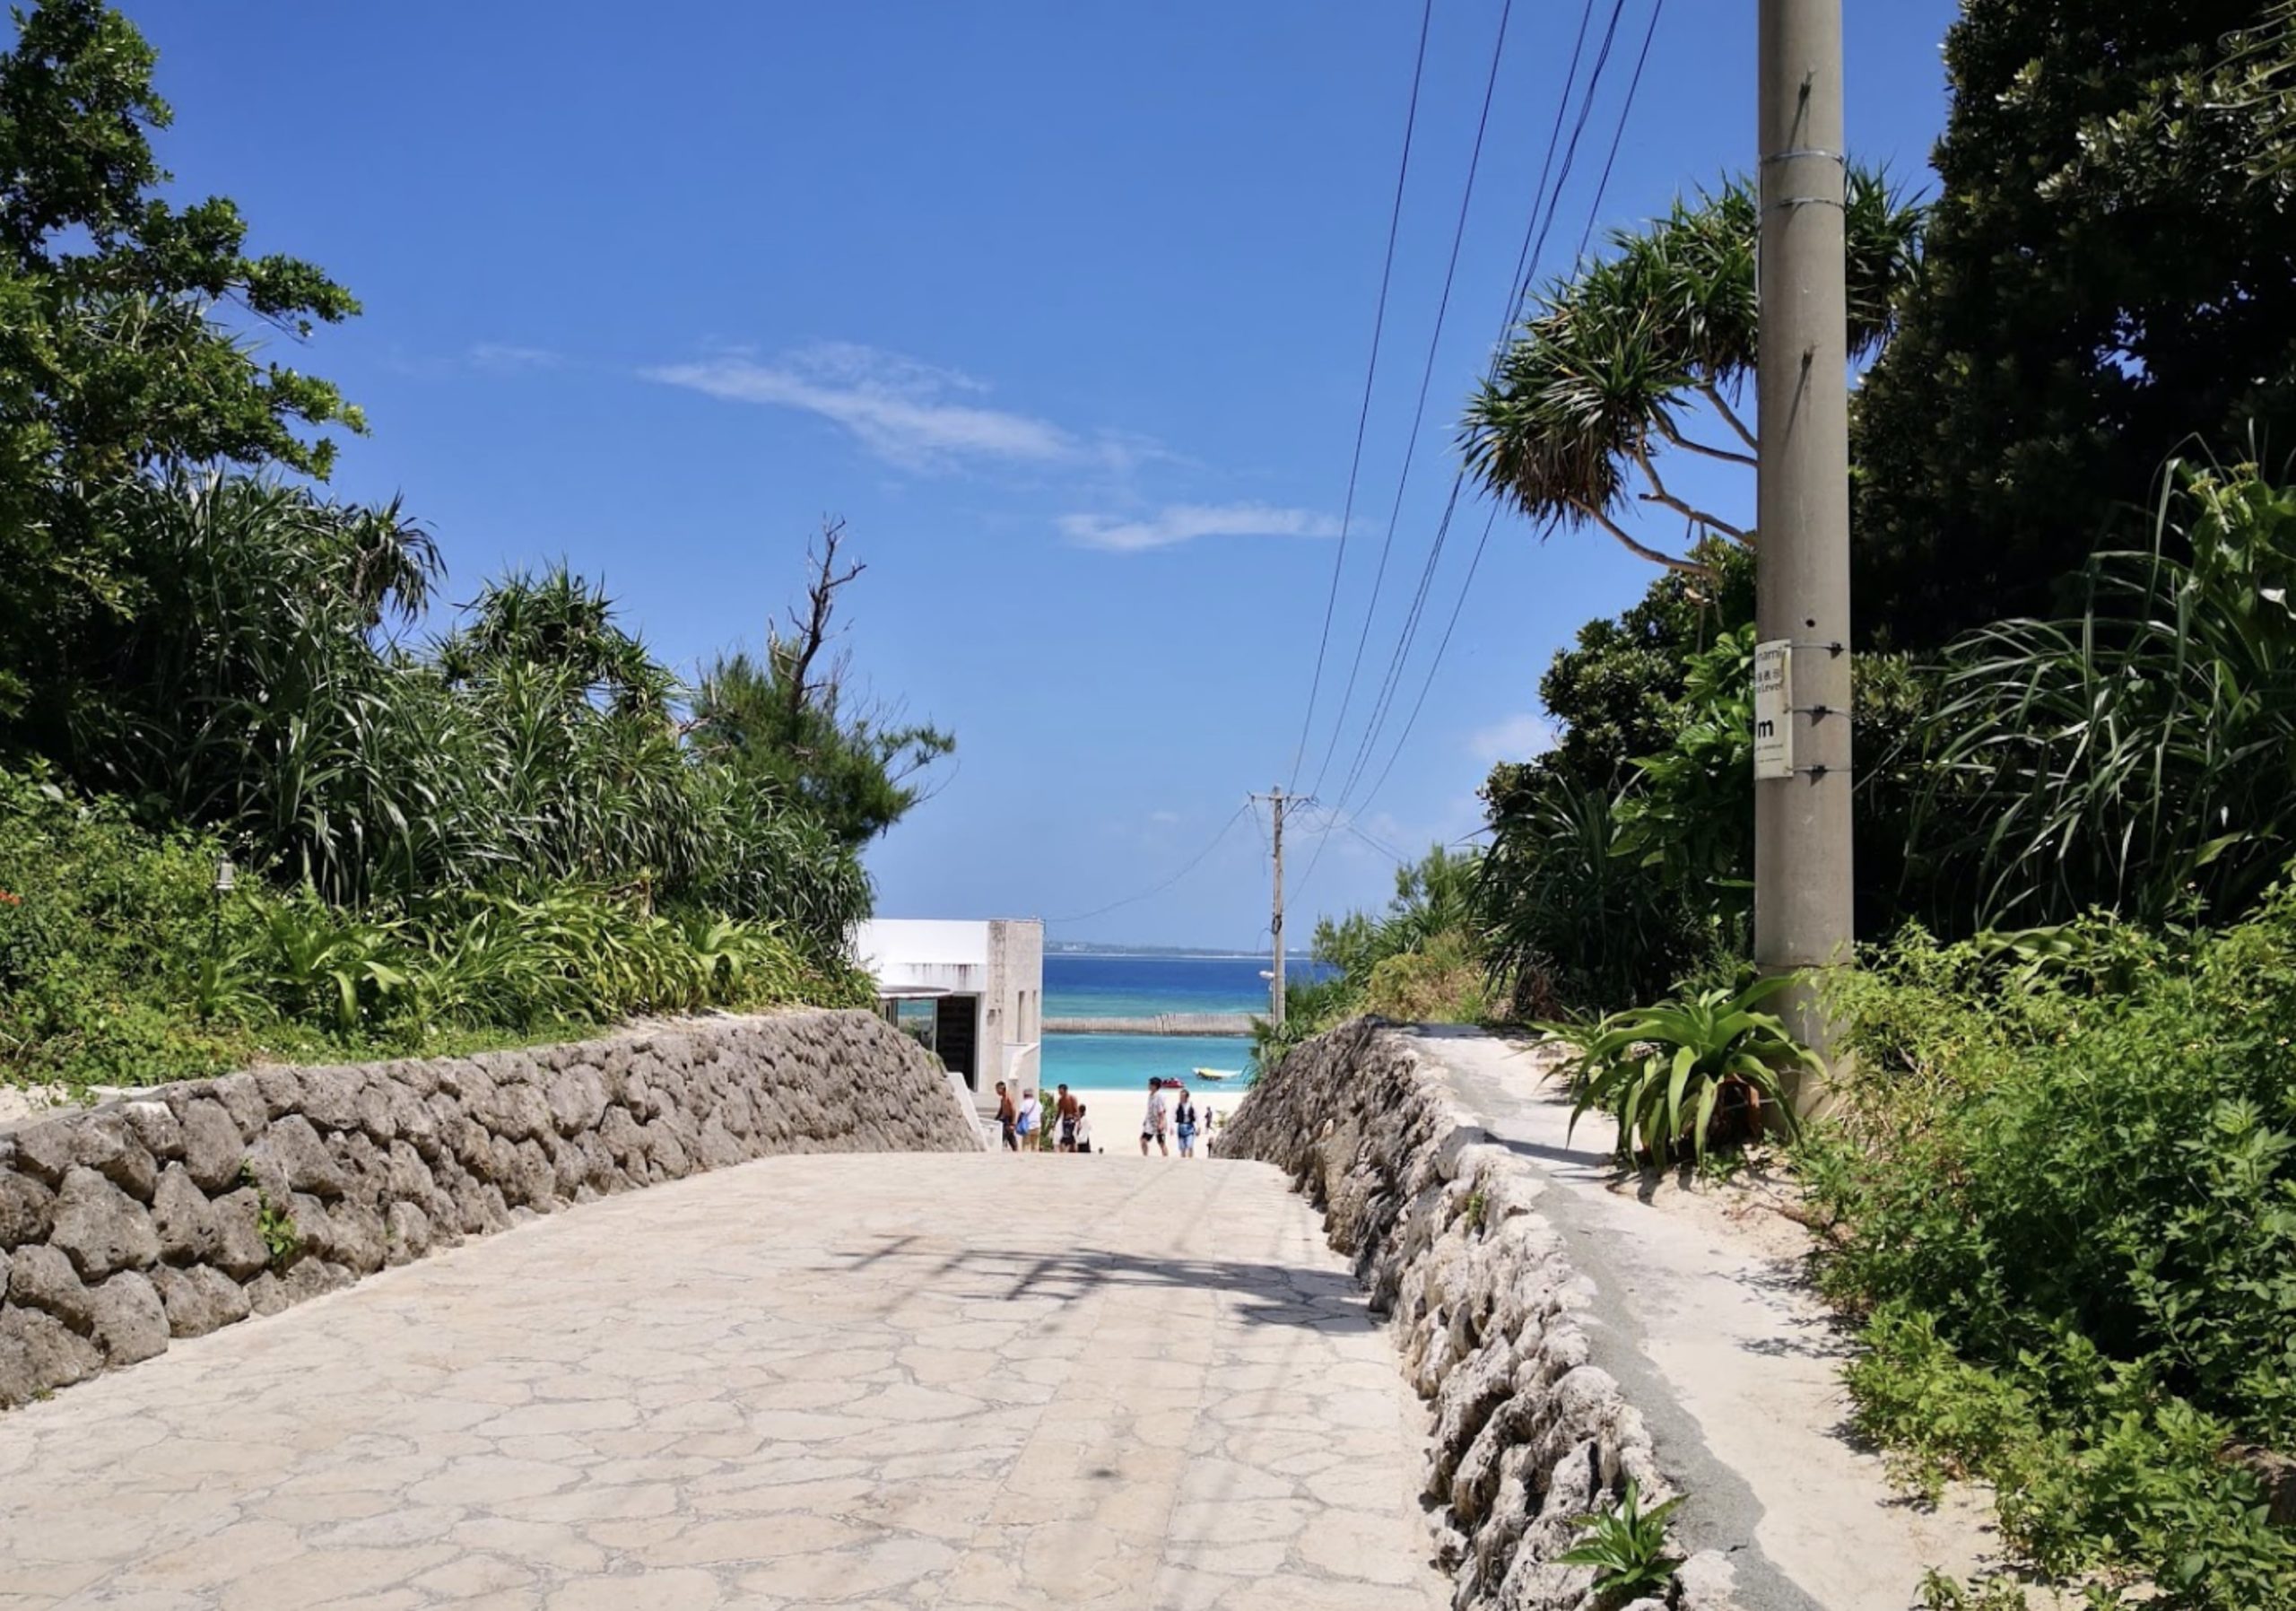 沖縄の風景